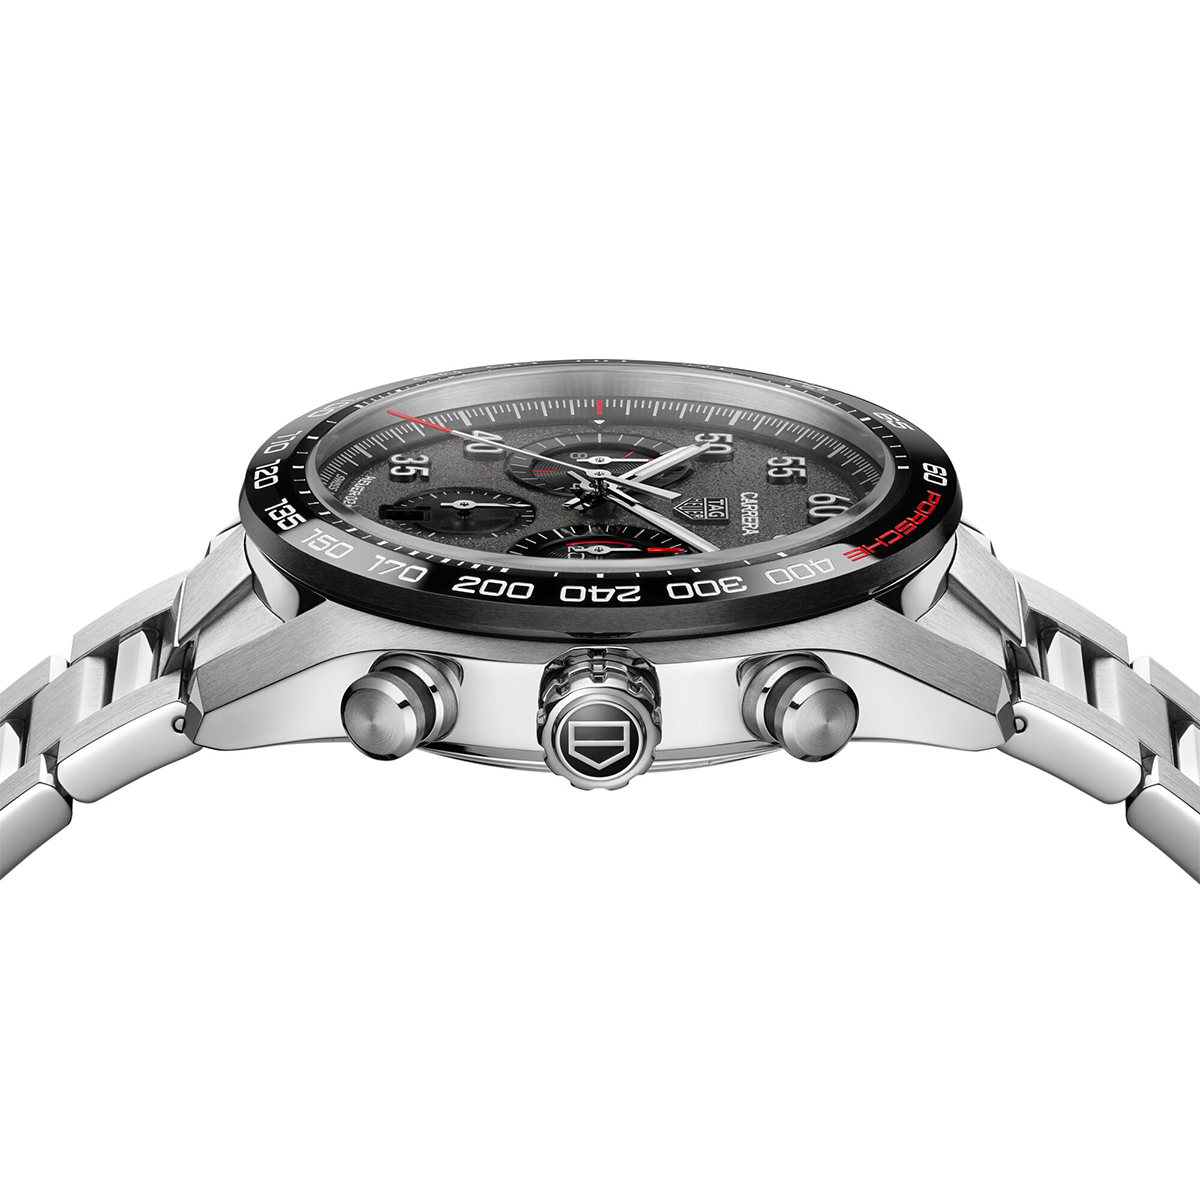 Carrera Porsche Chronograph 44mm Watch